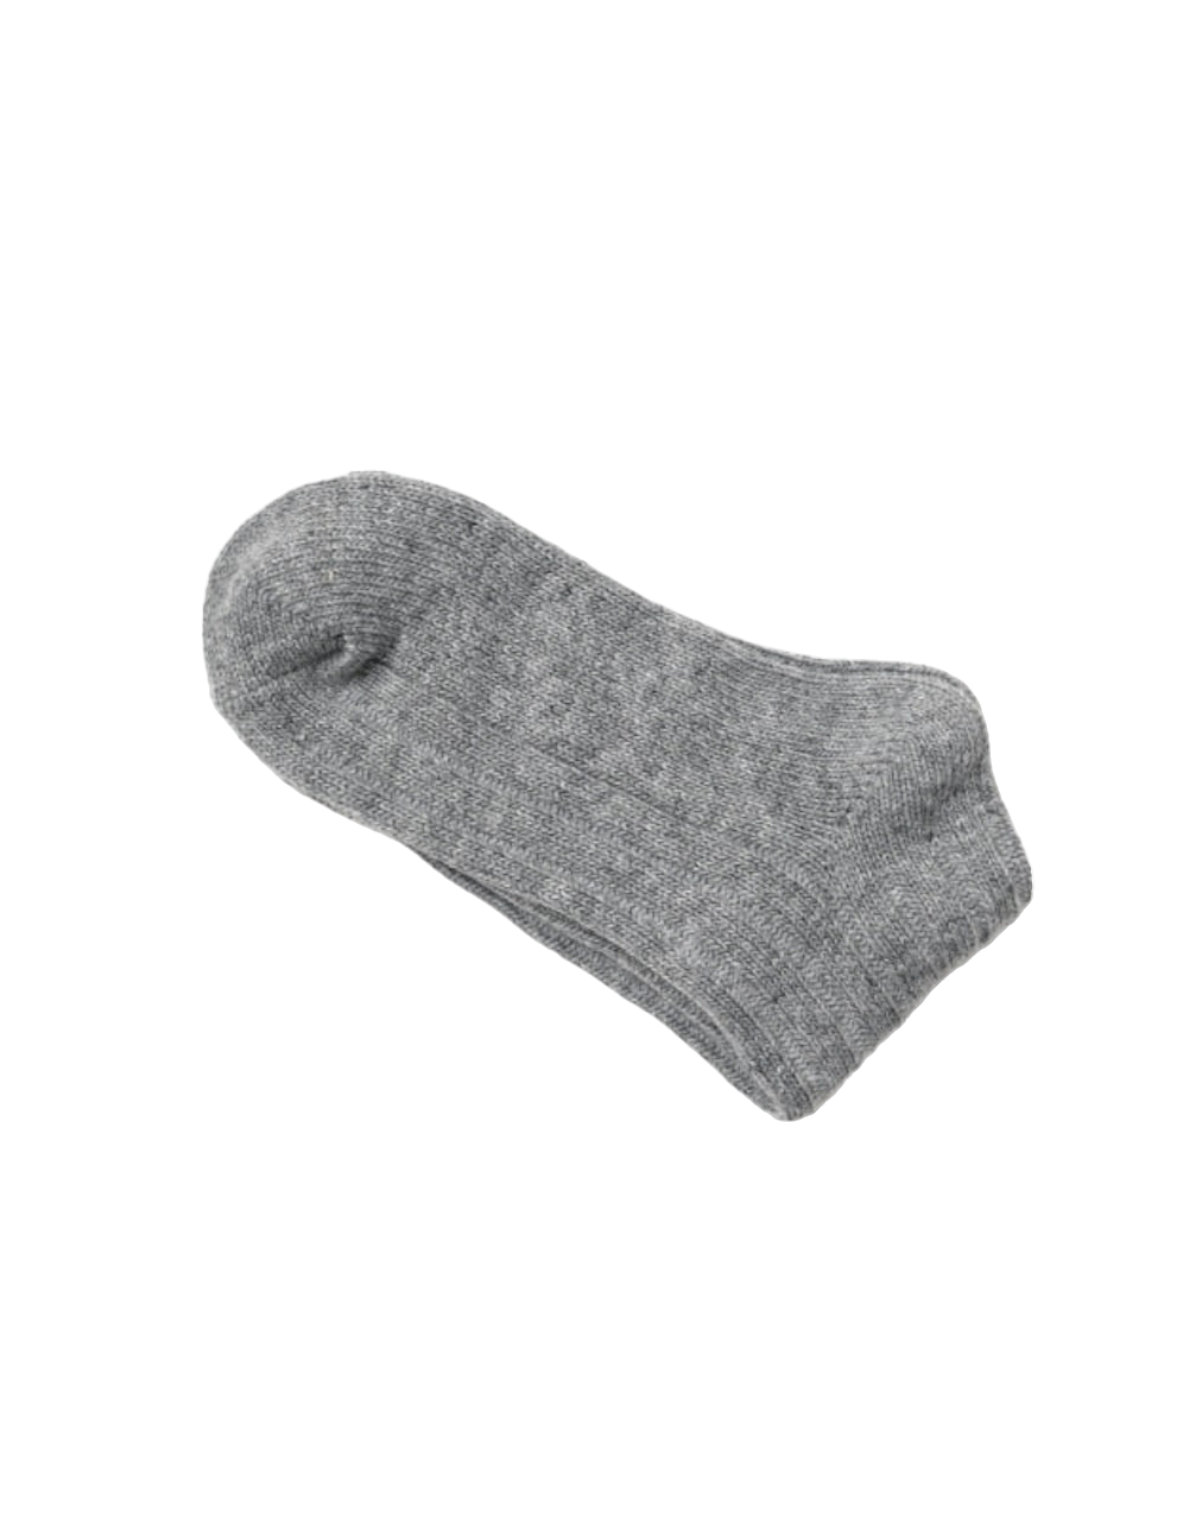 灰色羊絨混紡羅紋襪子